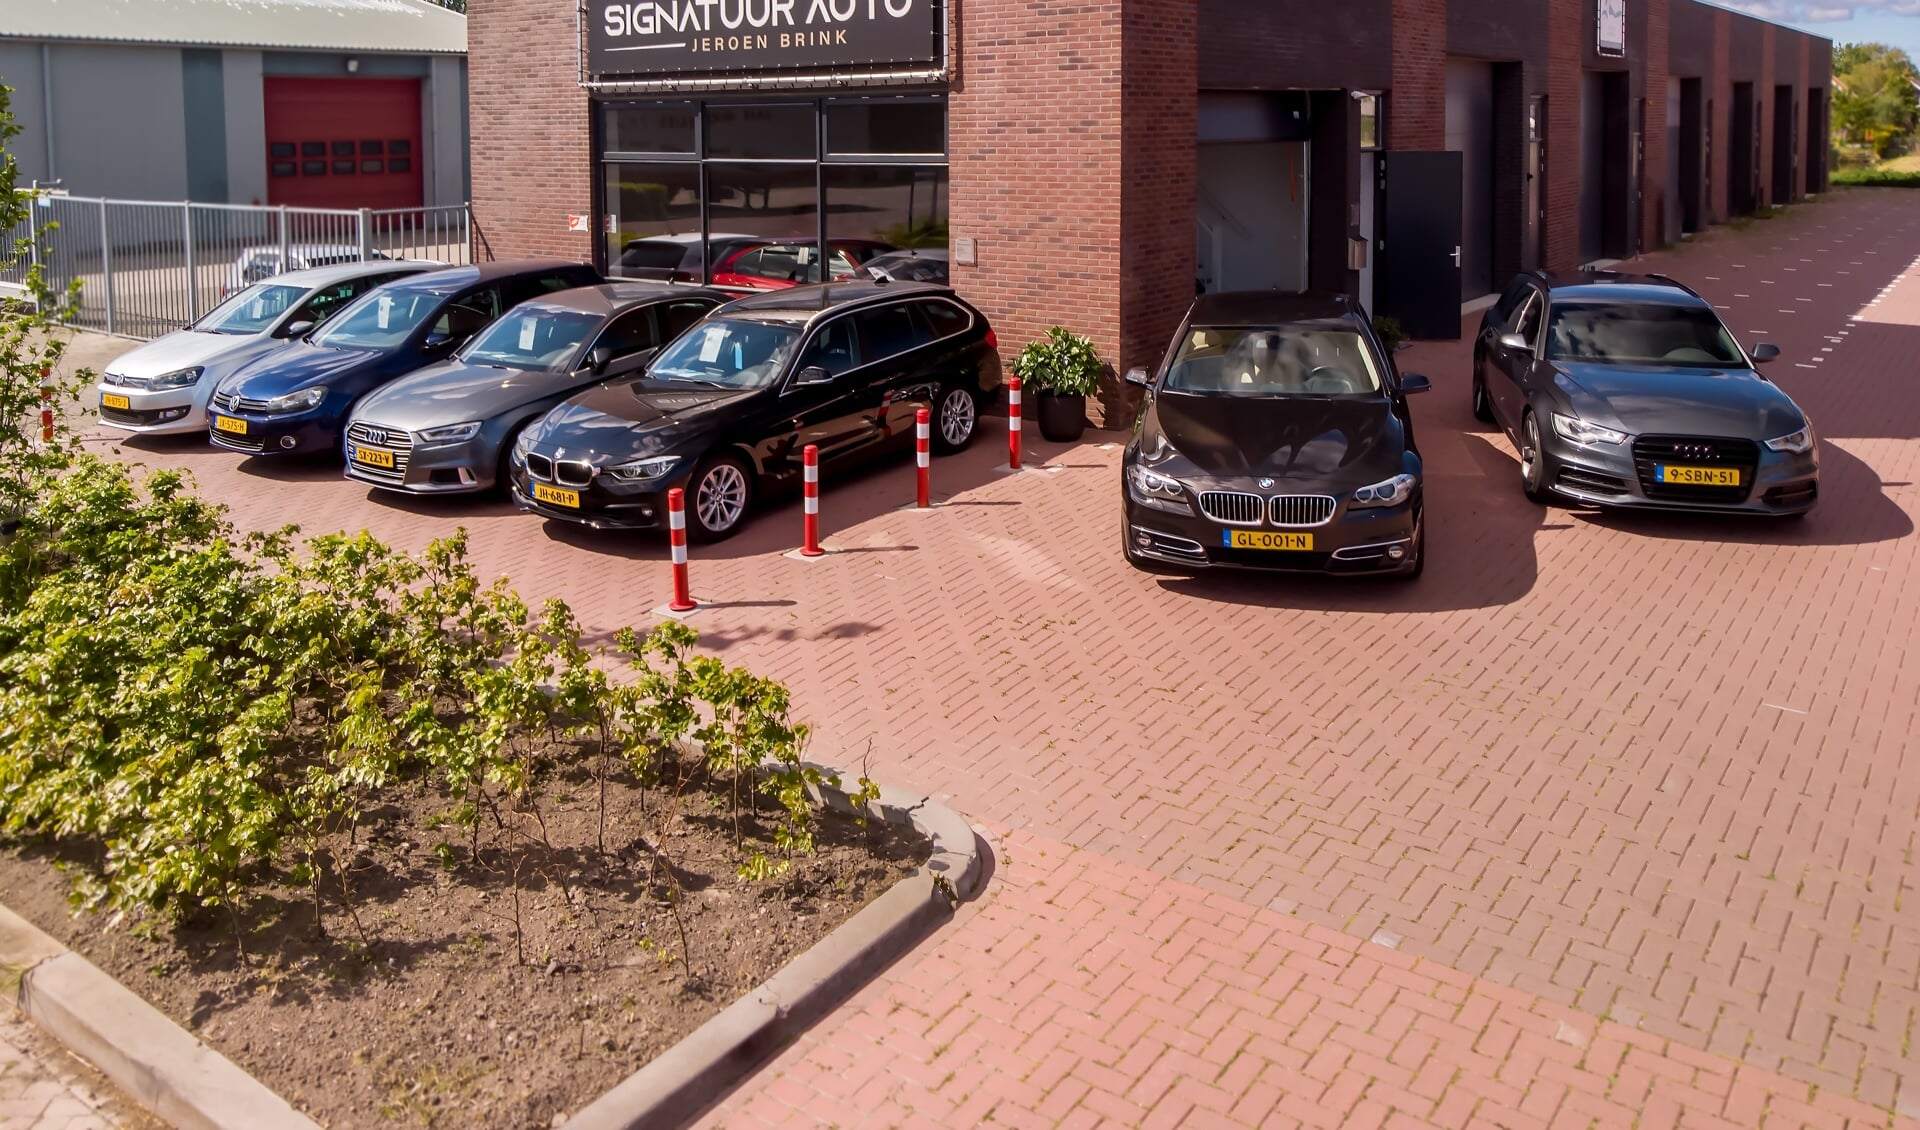 De prachtige locatie van Signatuur Auto Jeroen Brink in Nibbixwoud.